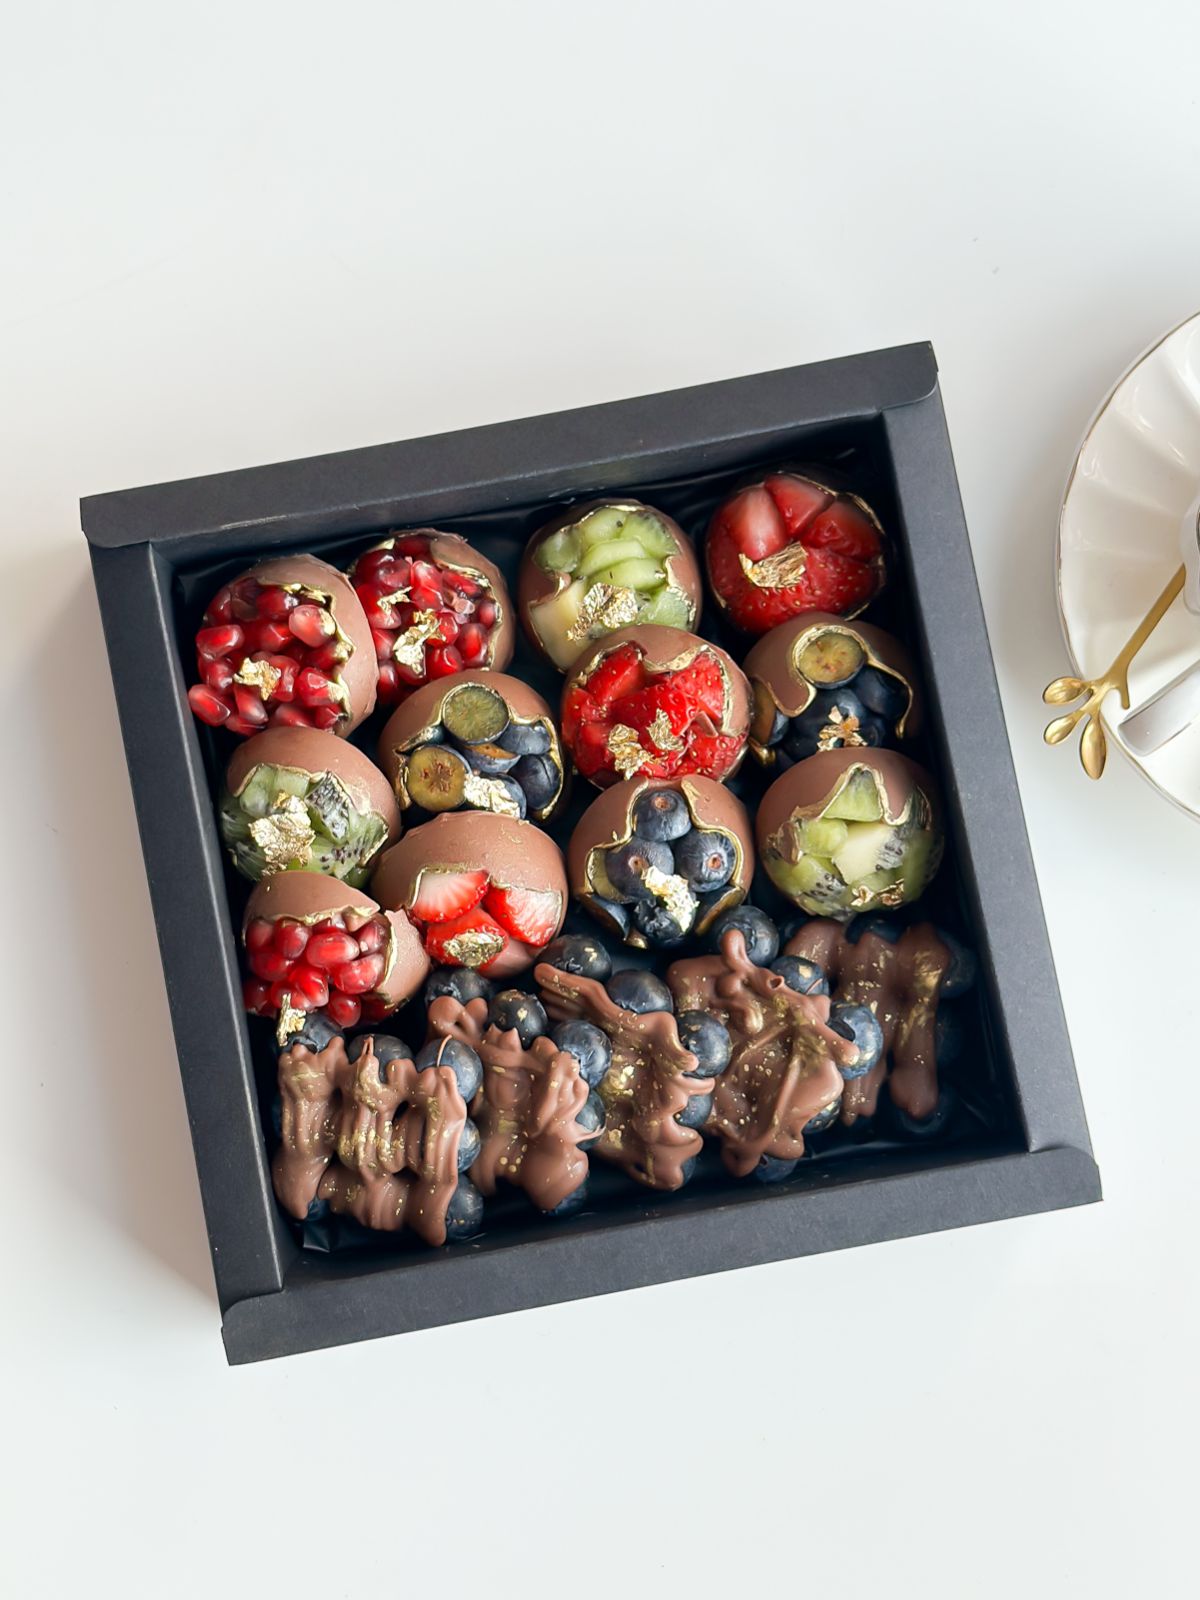 Фруктовый бокс "Сочное комбо" из фруктовых и ягодных медиантов в шоколаде